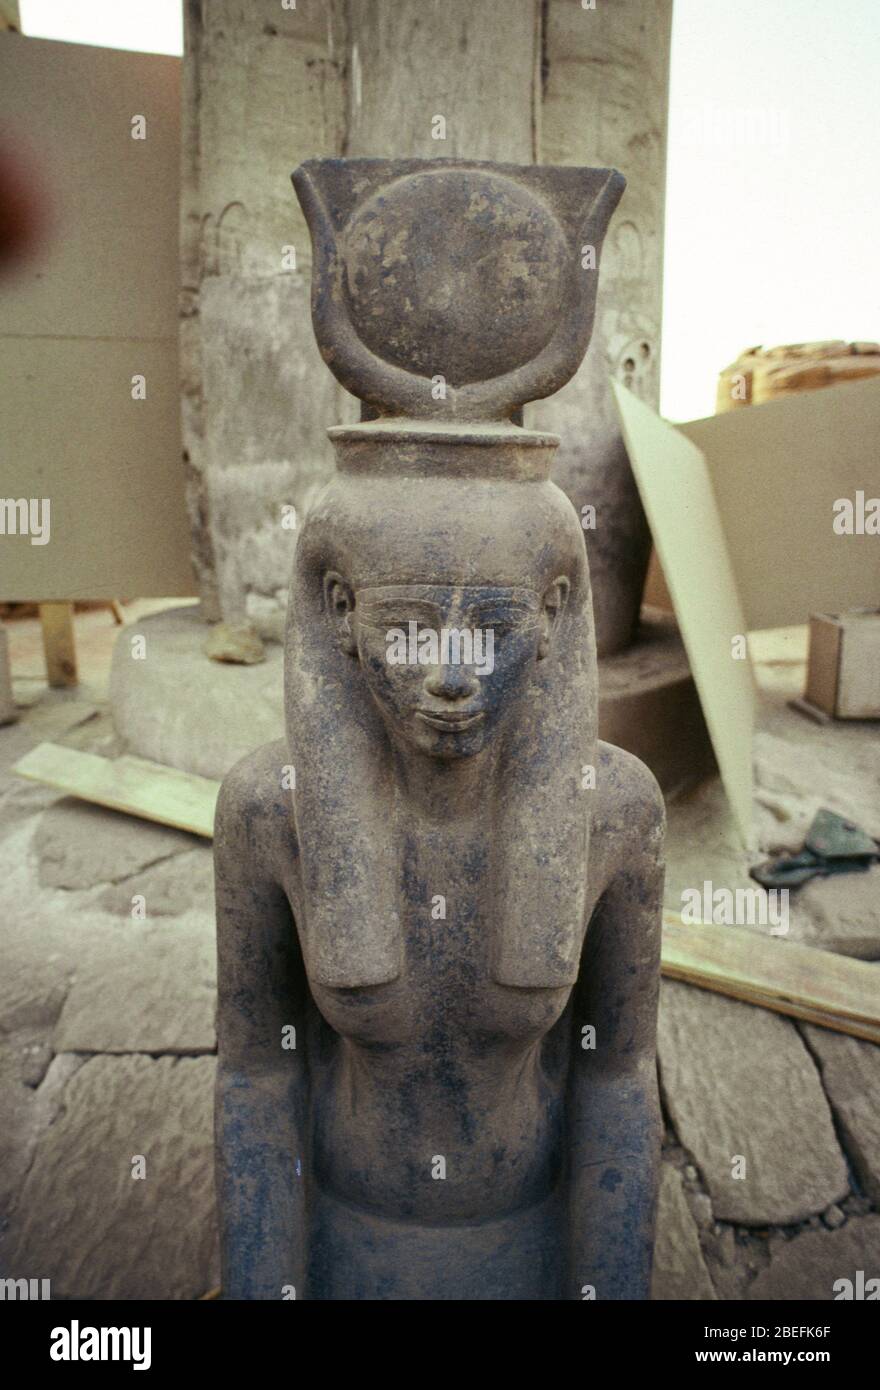 22 gennaio 1989 - Luxor, Egitto -- la cache della statua del tempio di Luxor fu una delle scoperte archeologiche più significative del decennio, dove un gruppo di antiche statue egiziane fu scoperto il 22 gennaio 1989, durante la manutenzione ordinaria del tempio in una zona turistica molto viaggiata. Furono scoperti sotto la corte solare della diciottesima dinastia Pharaoh Amenhotep III Una lista parziale di statue: Thutmosis III, Amenhotep III, la dea Lunyt, Tutankhamun, Horemheb, Amun-Re-Kamutef e la dea Tawaret. Lo scavo è stato avviato nel 1989 sotto l'autorità di Mohamed El so Foto Stock